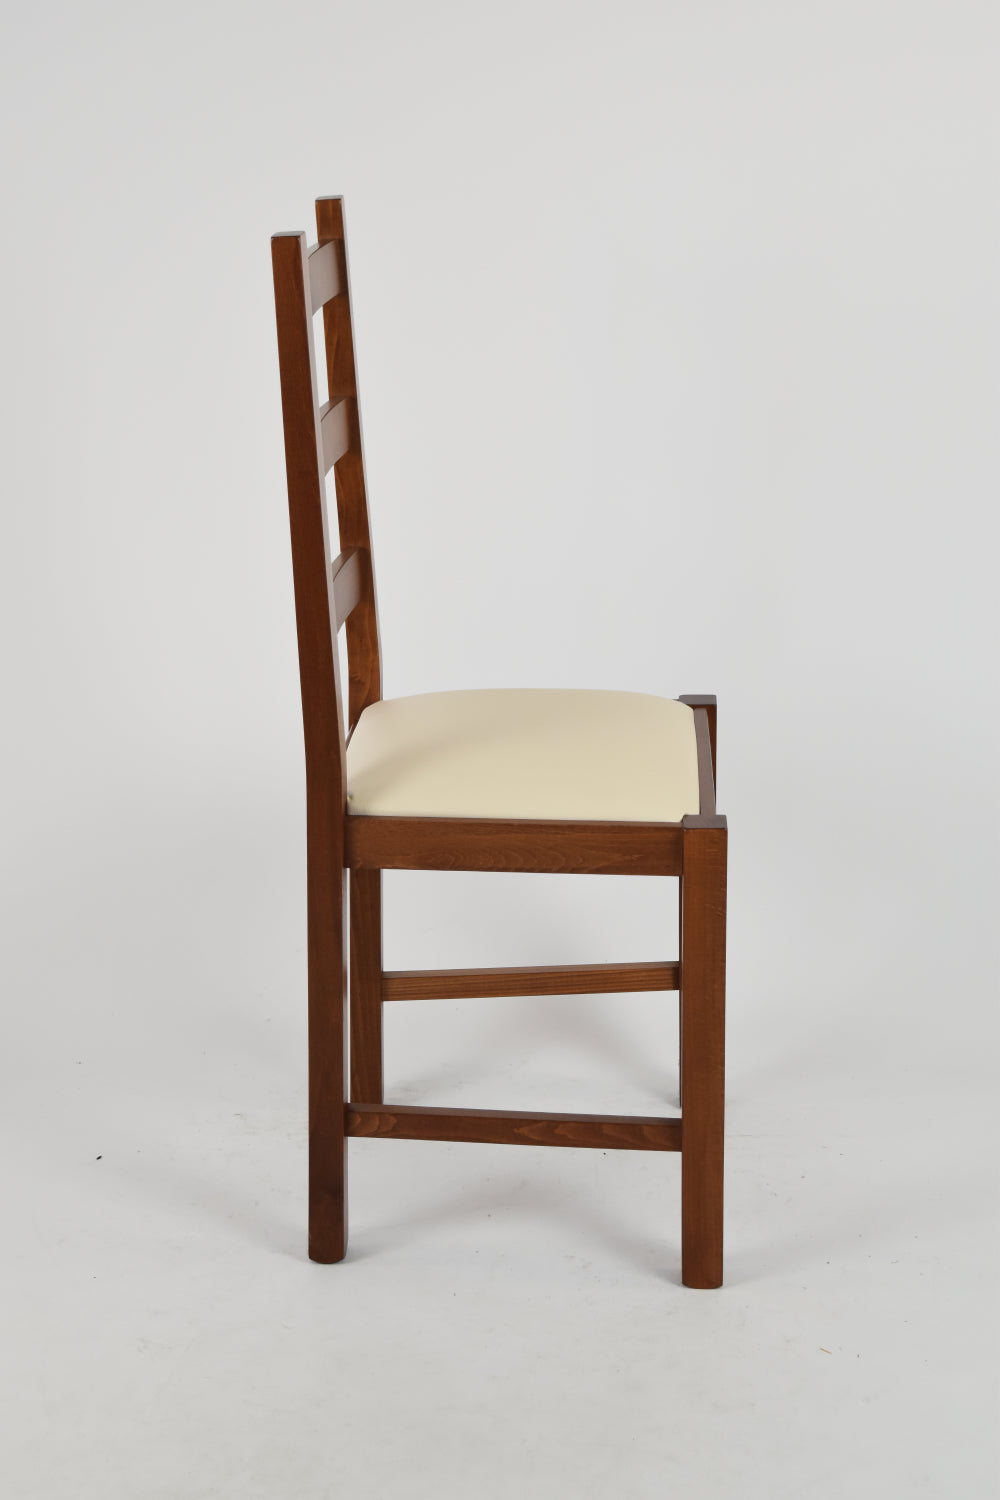 Tommychairs - Set 4 sillas de Cocina y Comedor  Rustica, Estructura en Madera de Haya Color Nogal Claro y Asiento tapizado en Polipiel Color Marfil